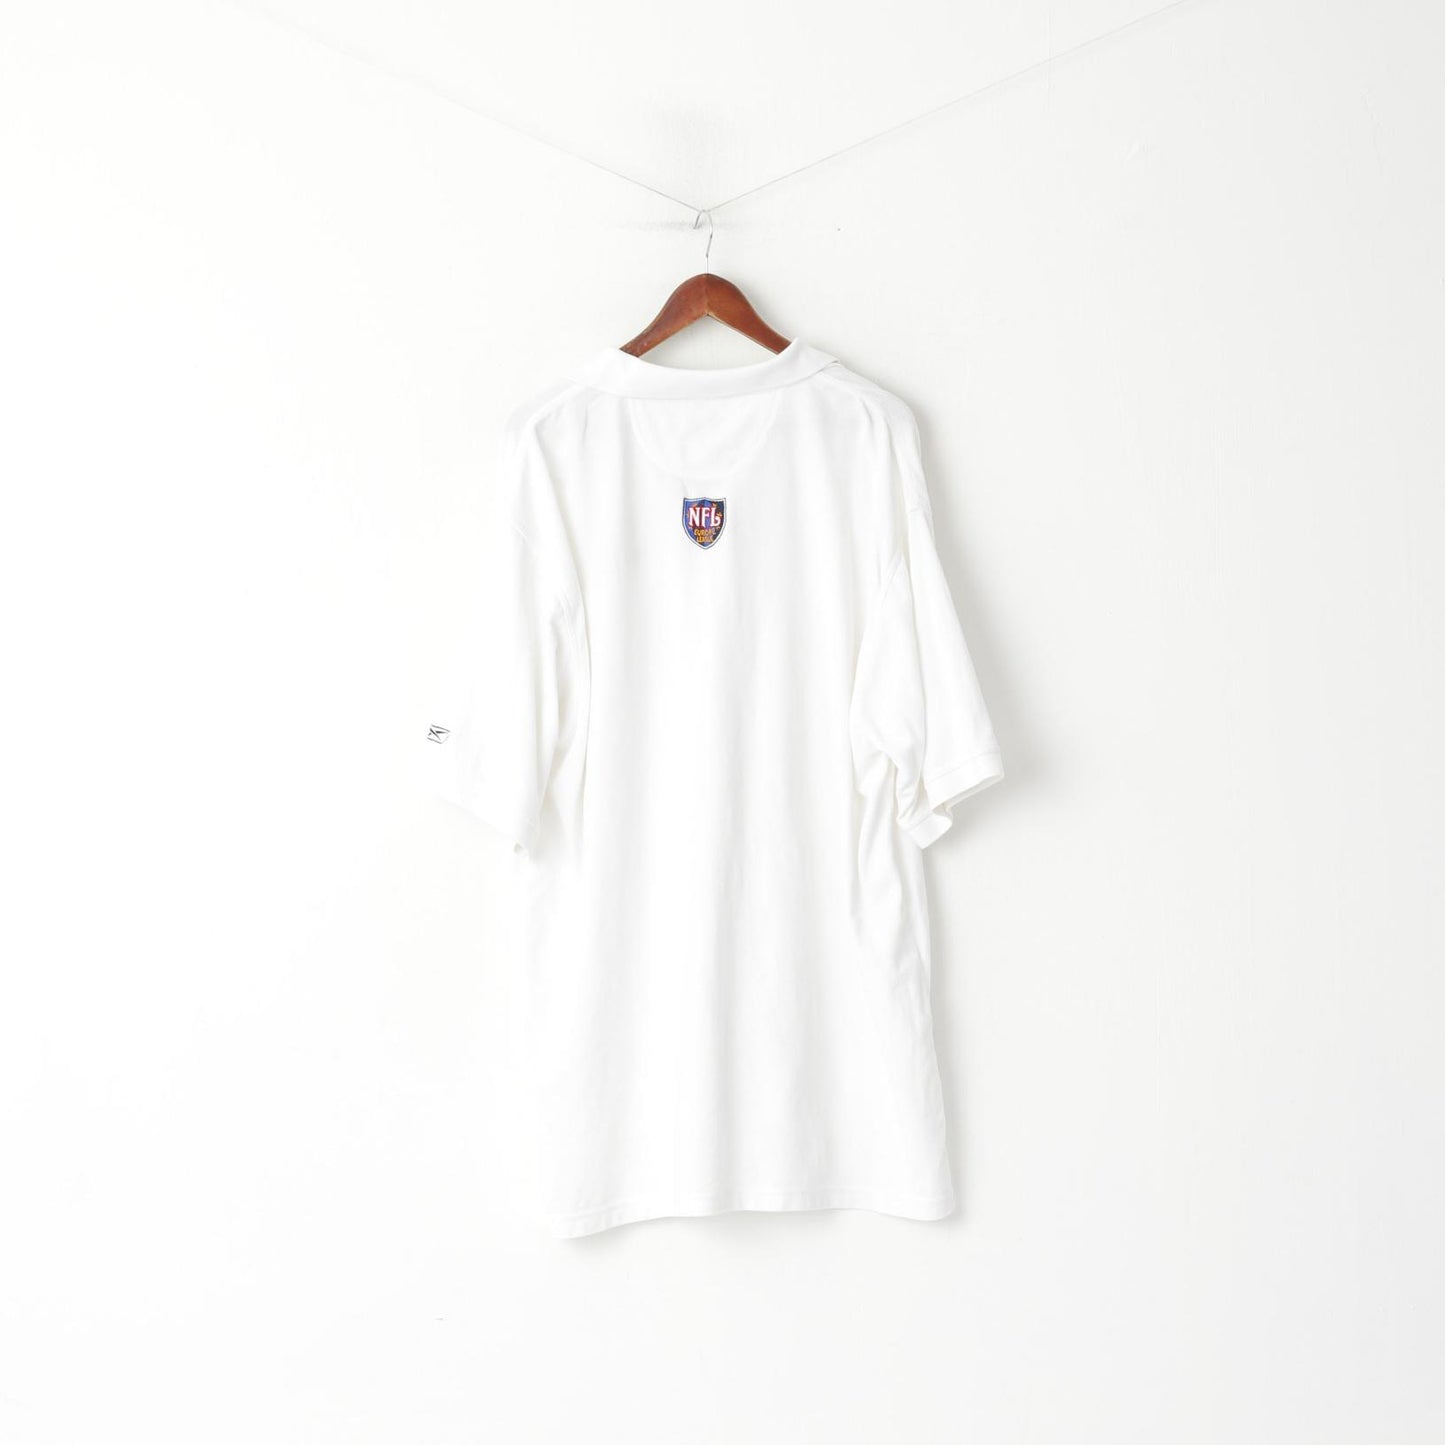 Reebok NFL Men 2XL (3XL) Polo Shirt White Long Cotton Europe League Play Dry Top